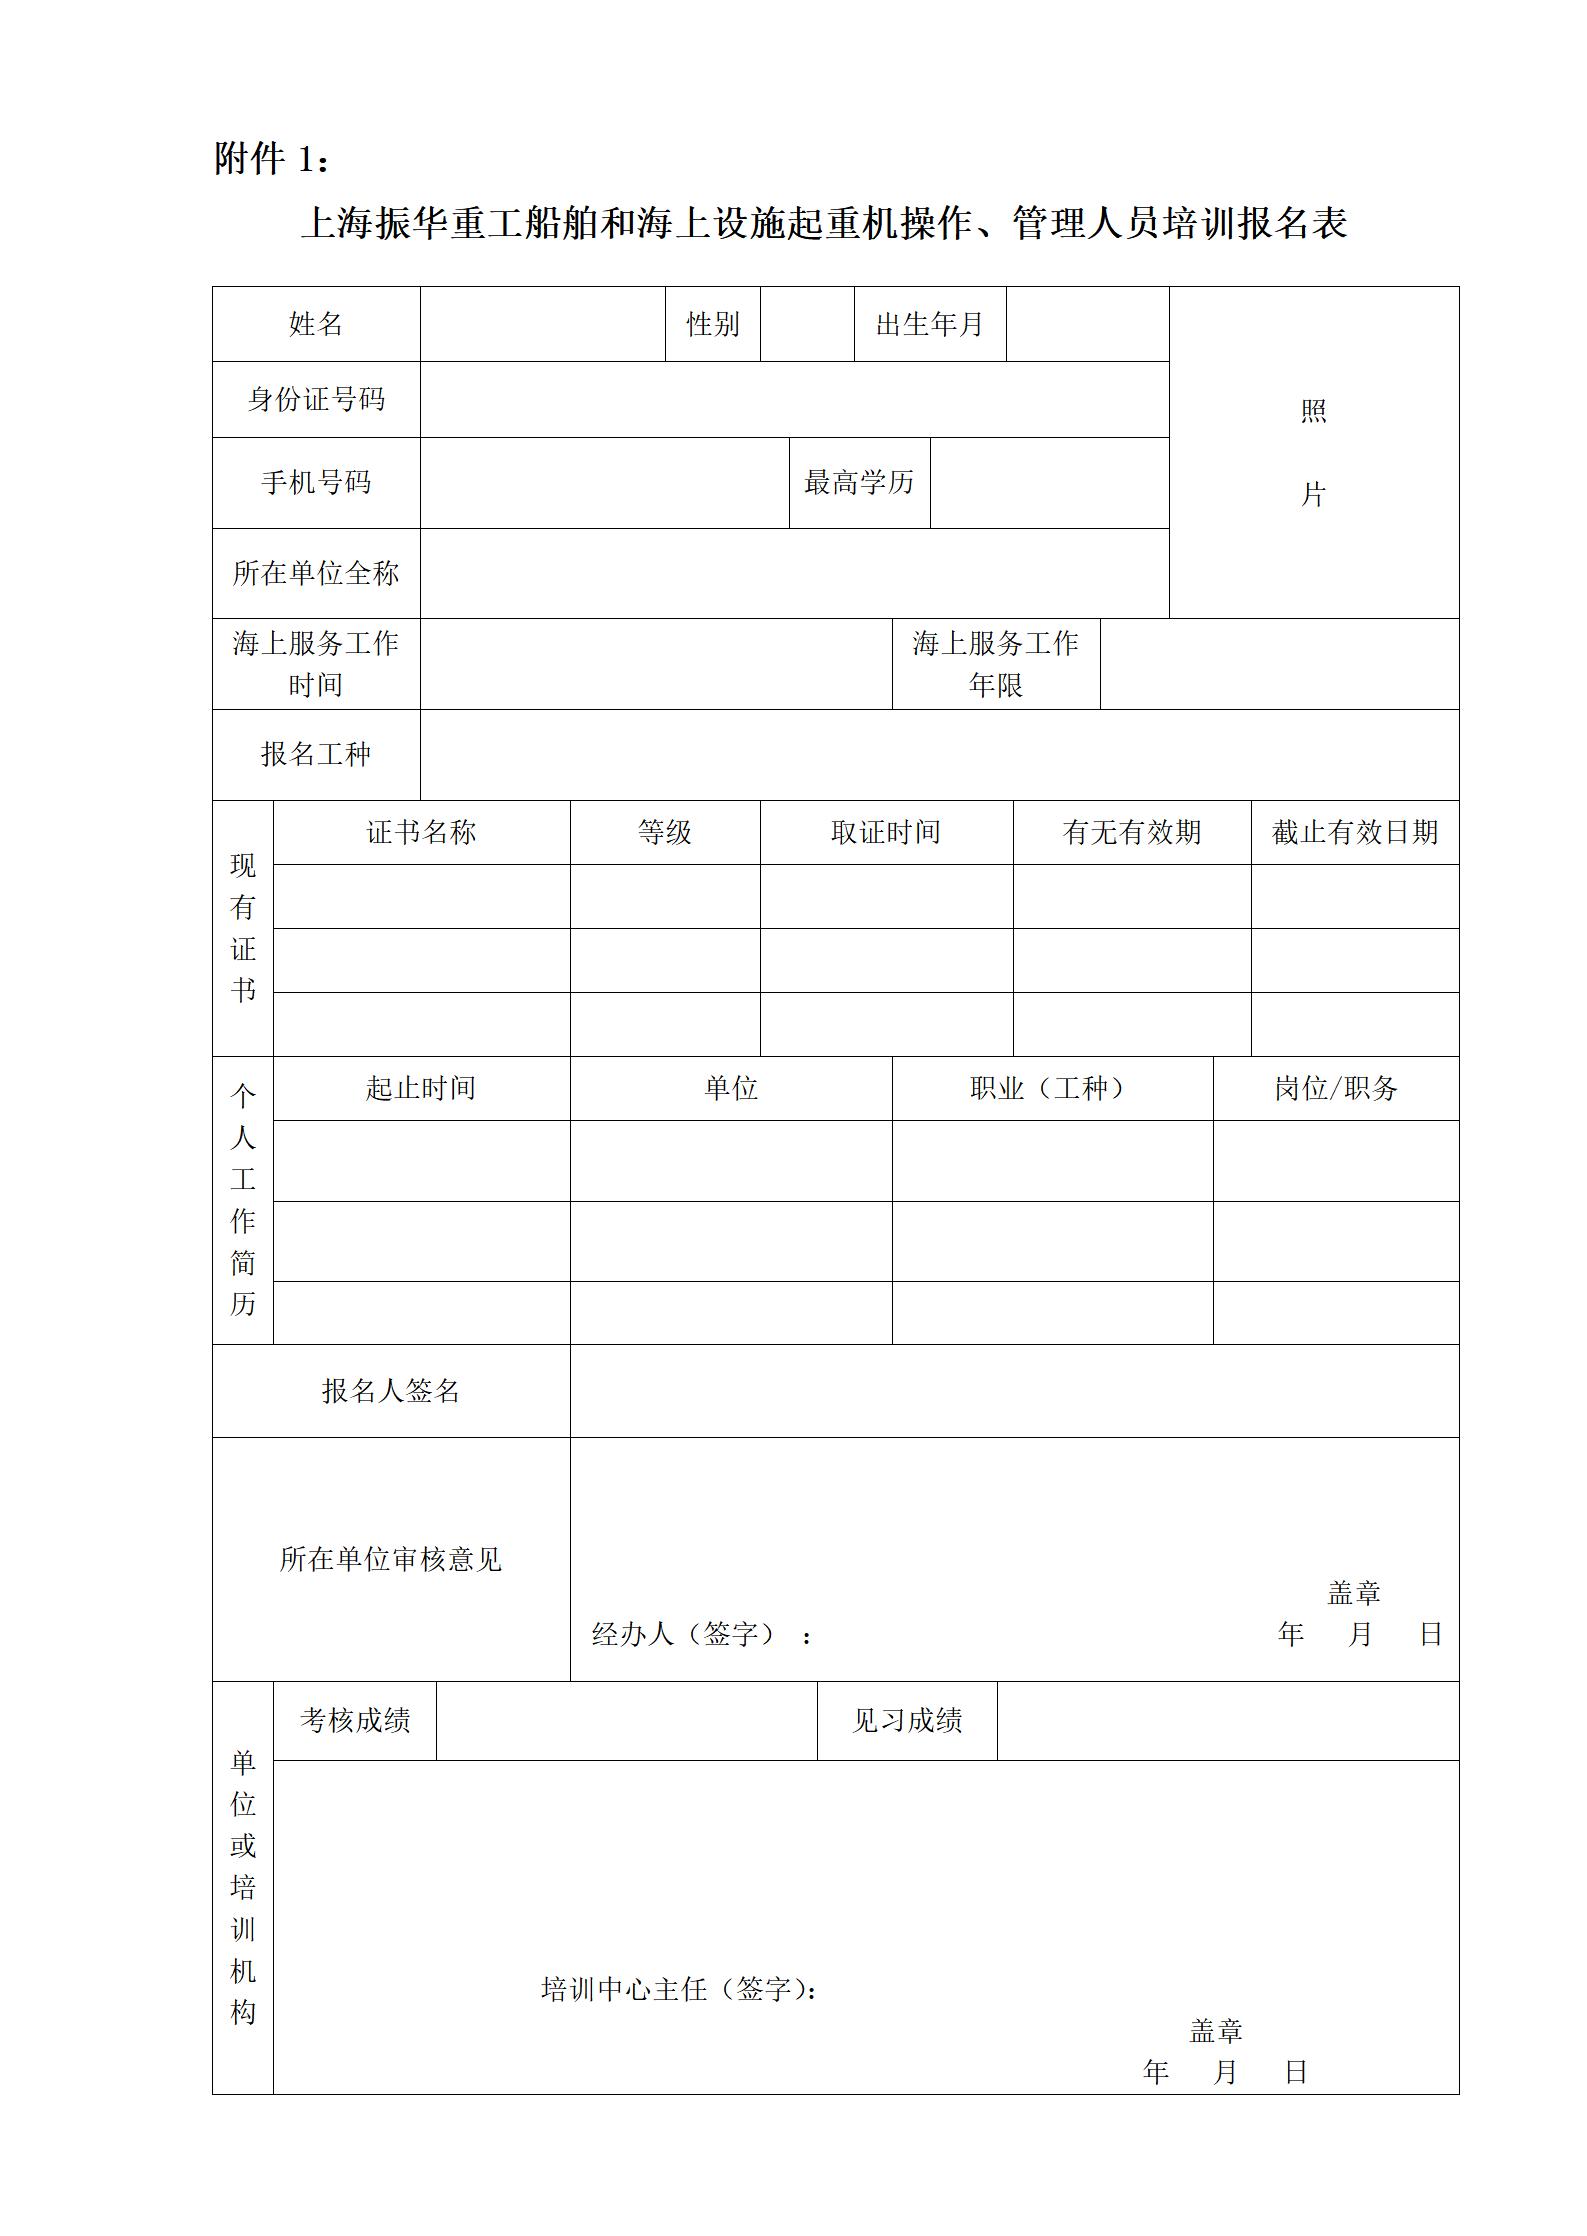 附件1：上海振华重工船舶和海上设施起重机操作、管理人员培训报名表_01.jpg